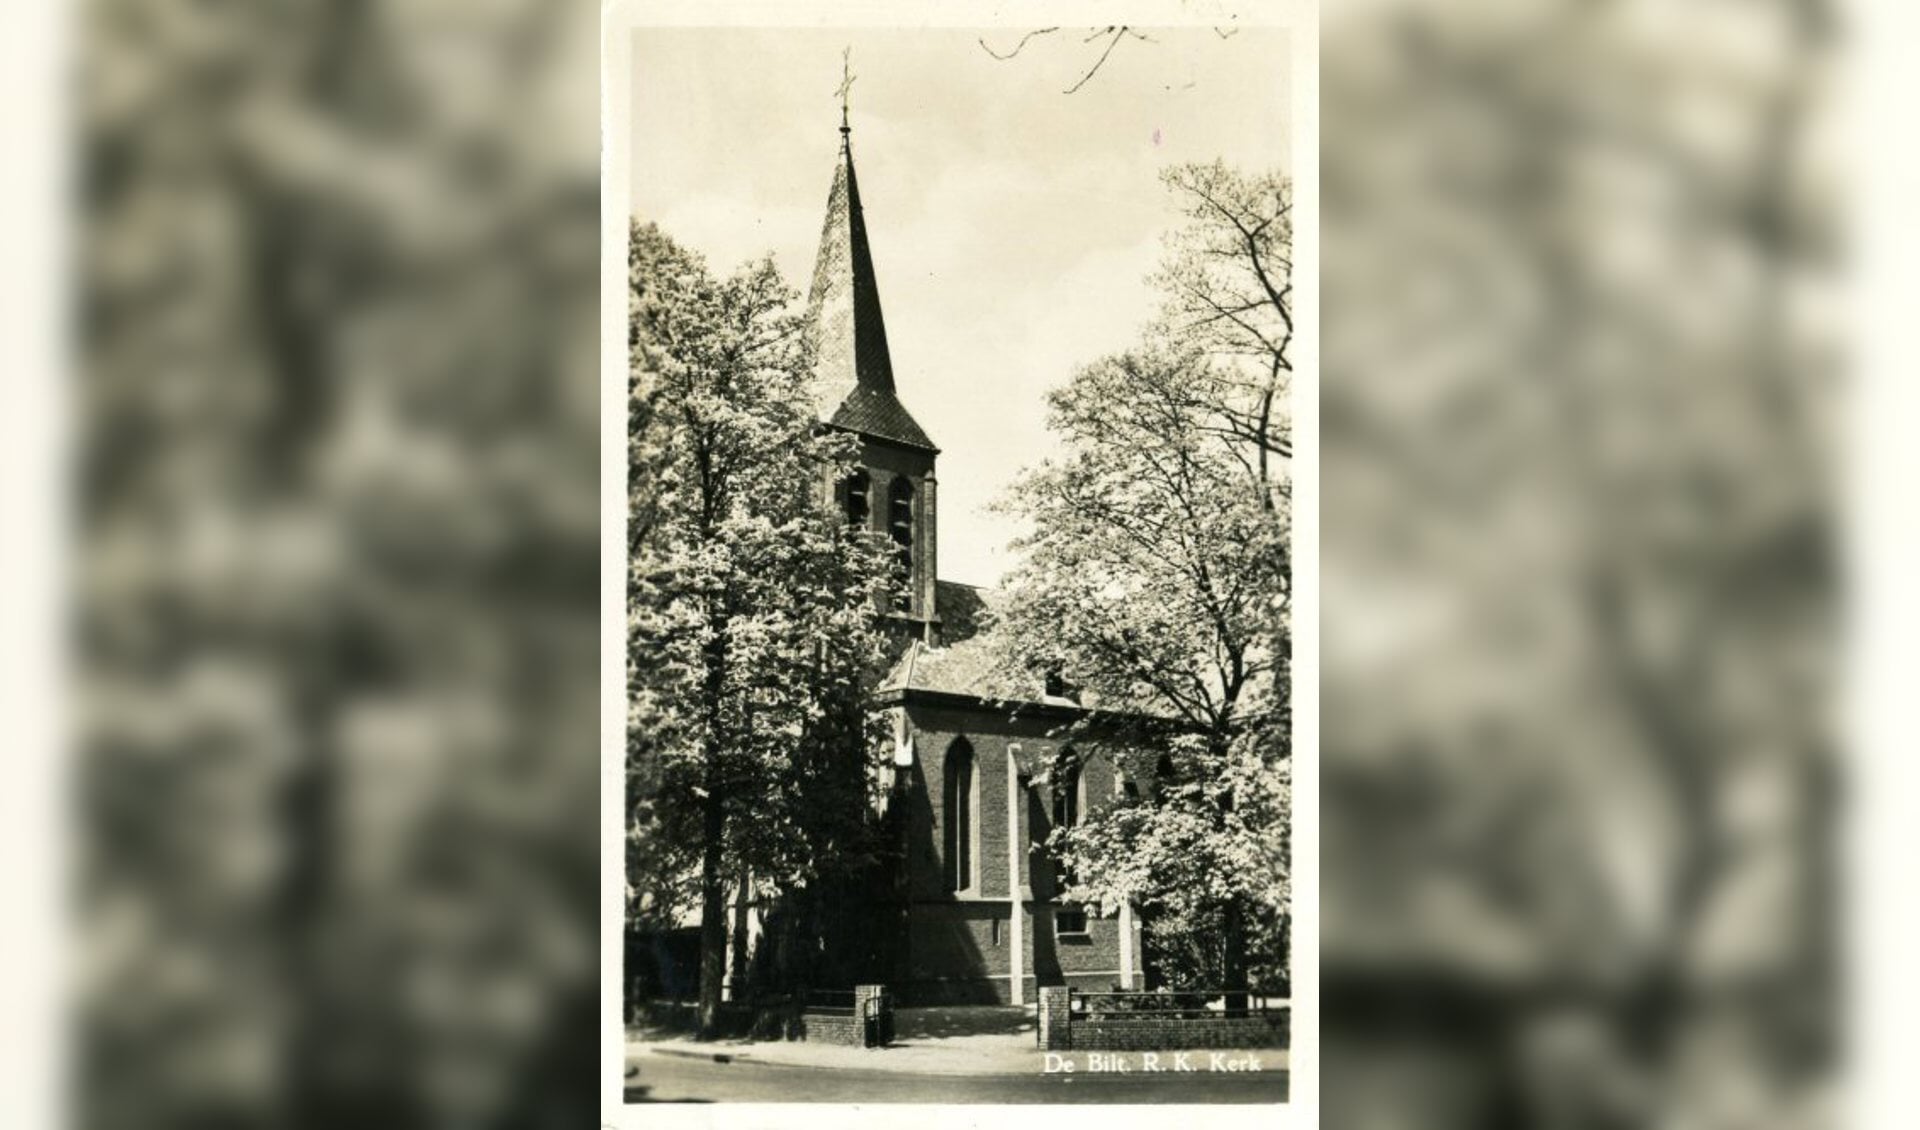 De RK-kerk aan de Kerklaan 29 in 1953.